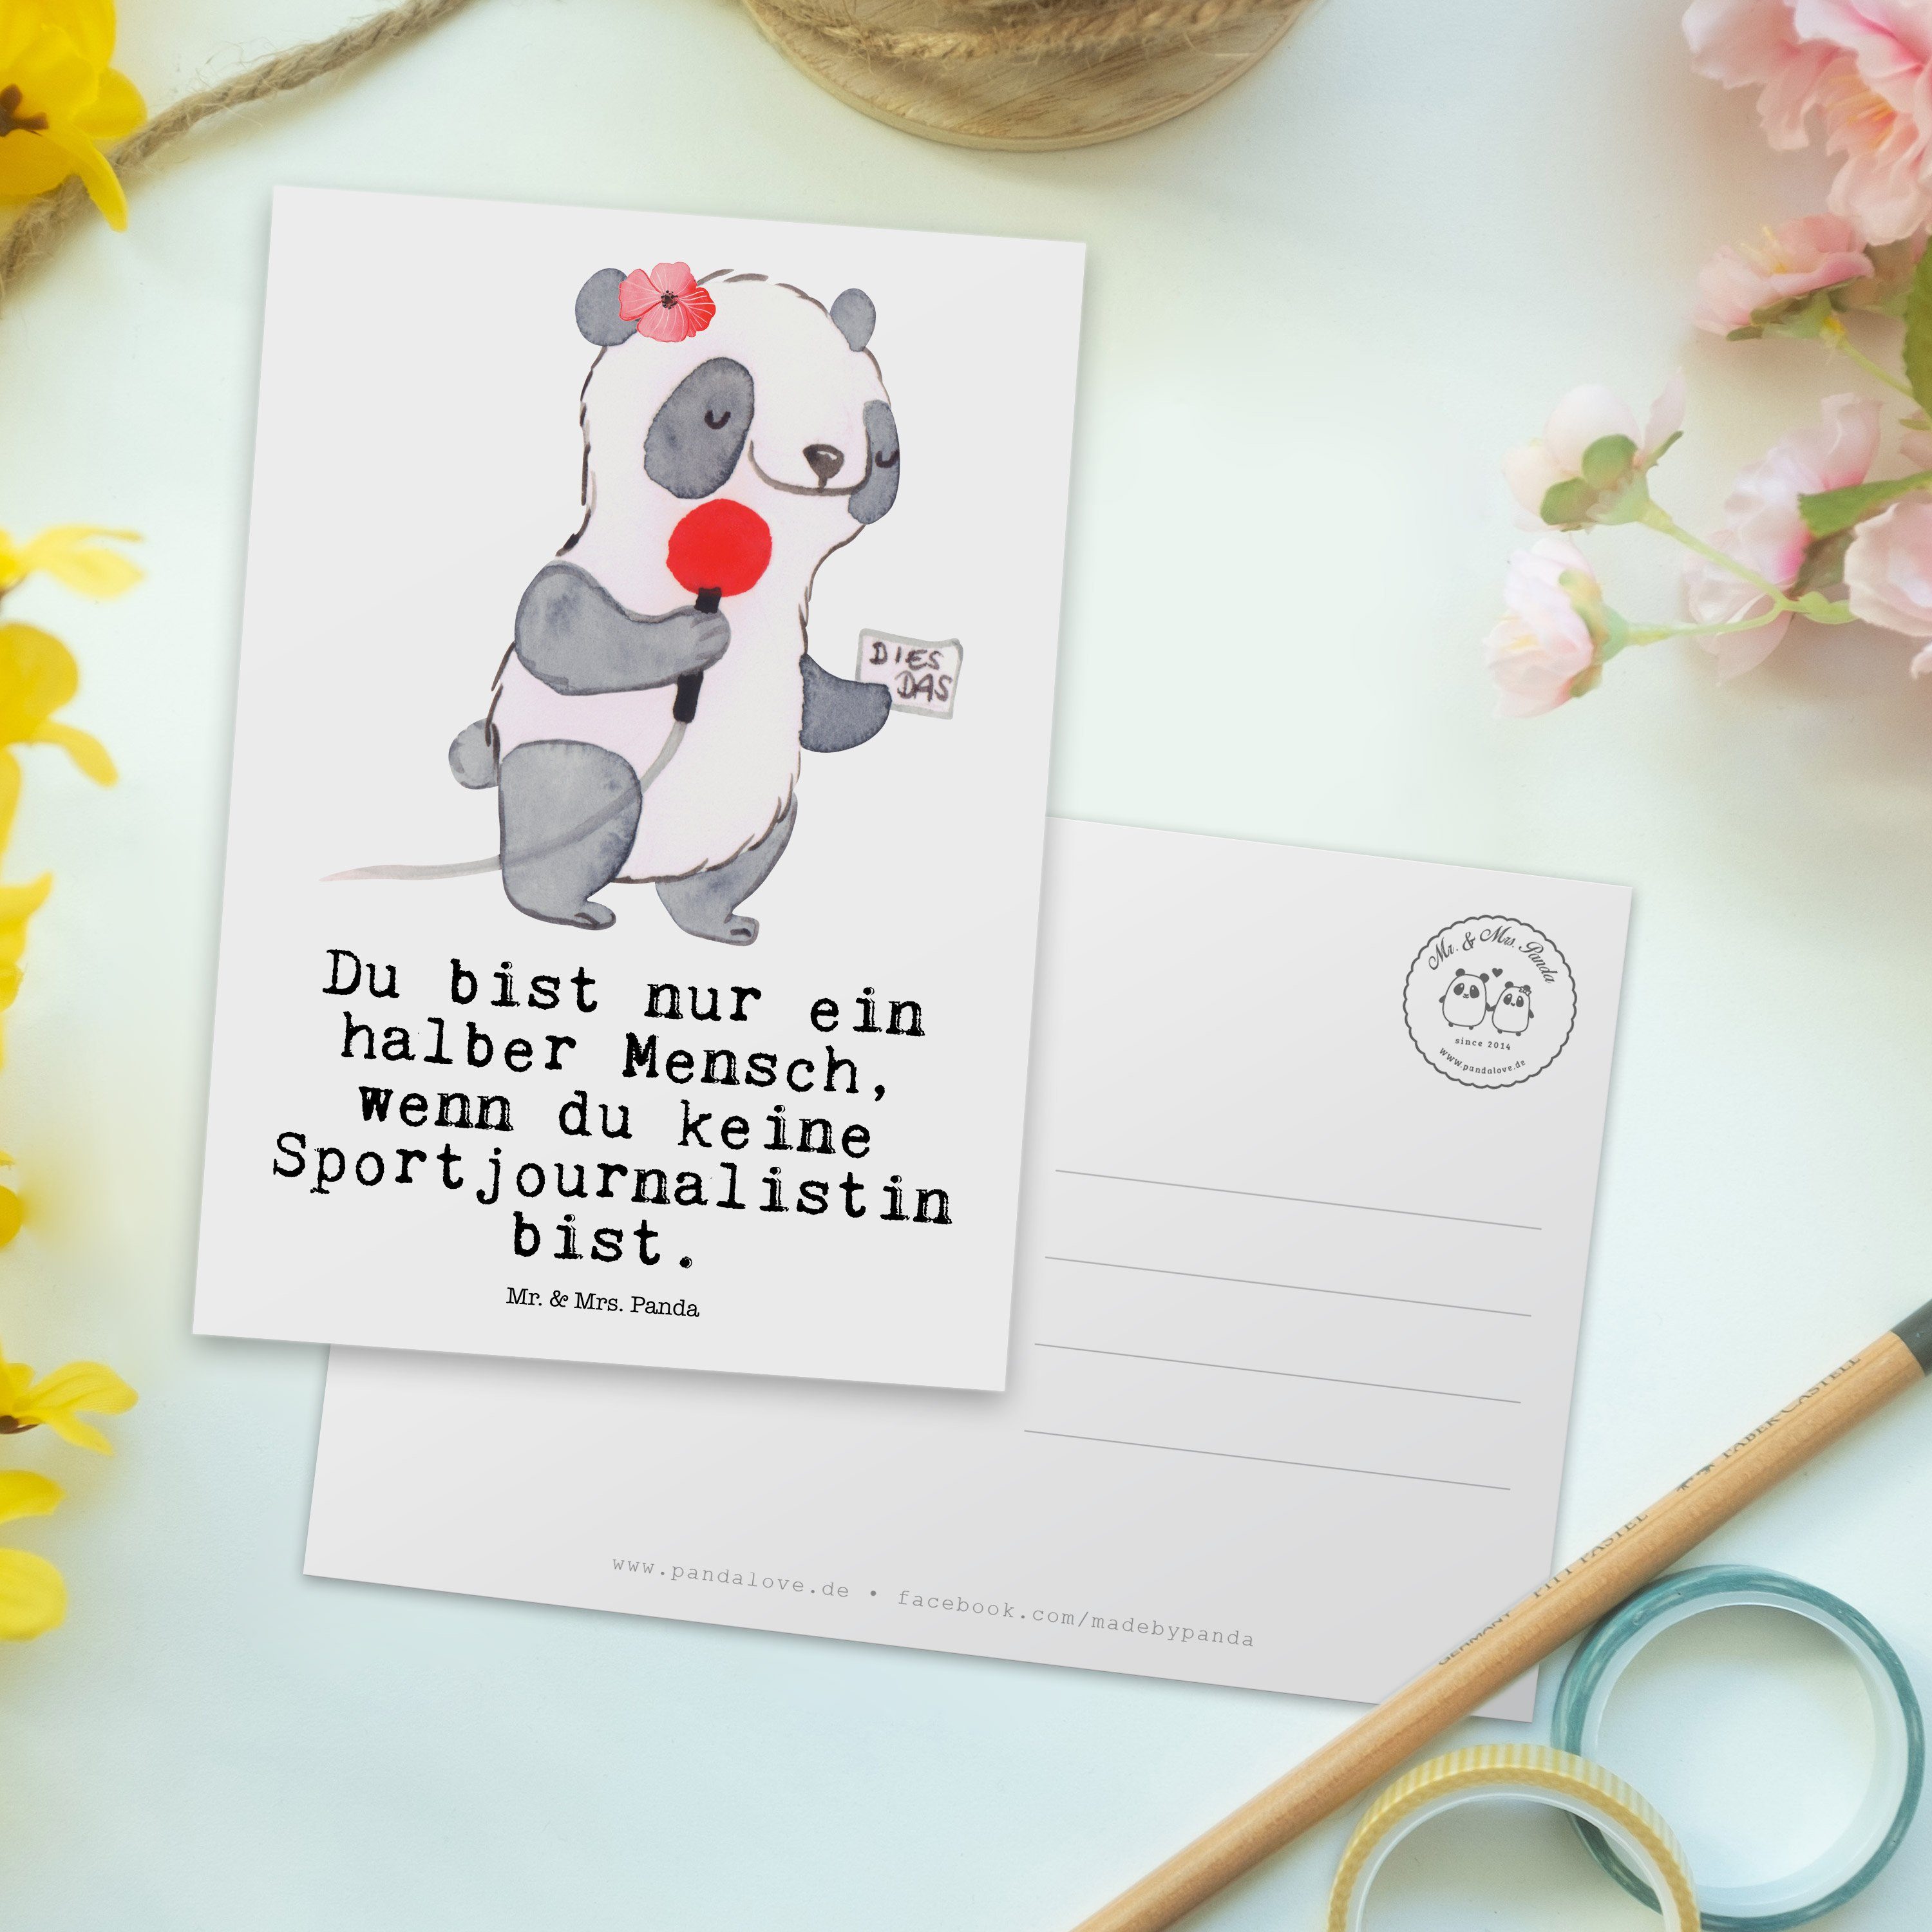 R Sportjournalistin & mit Mr. Firma, - Panda Geschenk, Mrs. - Herz Postkarte Ansichtskarte, Weiß